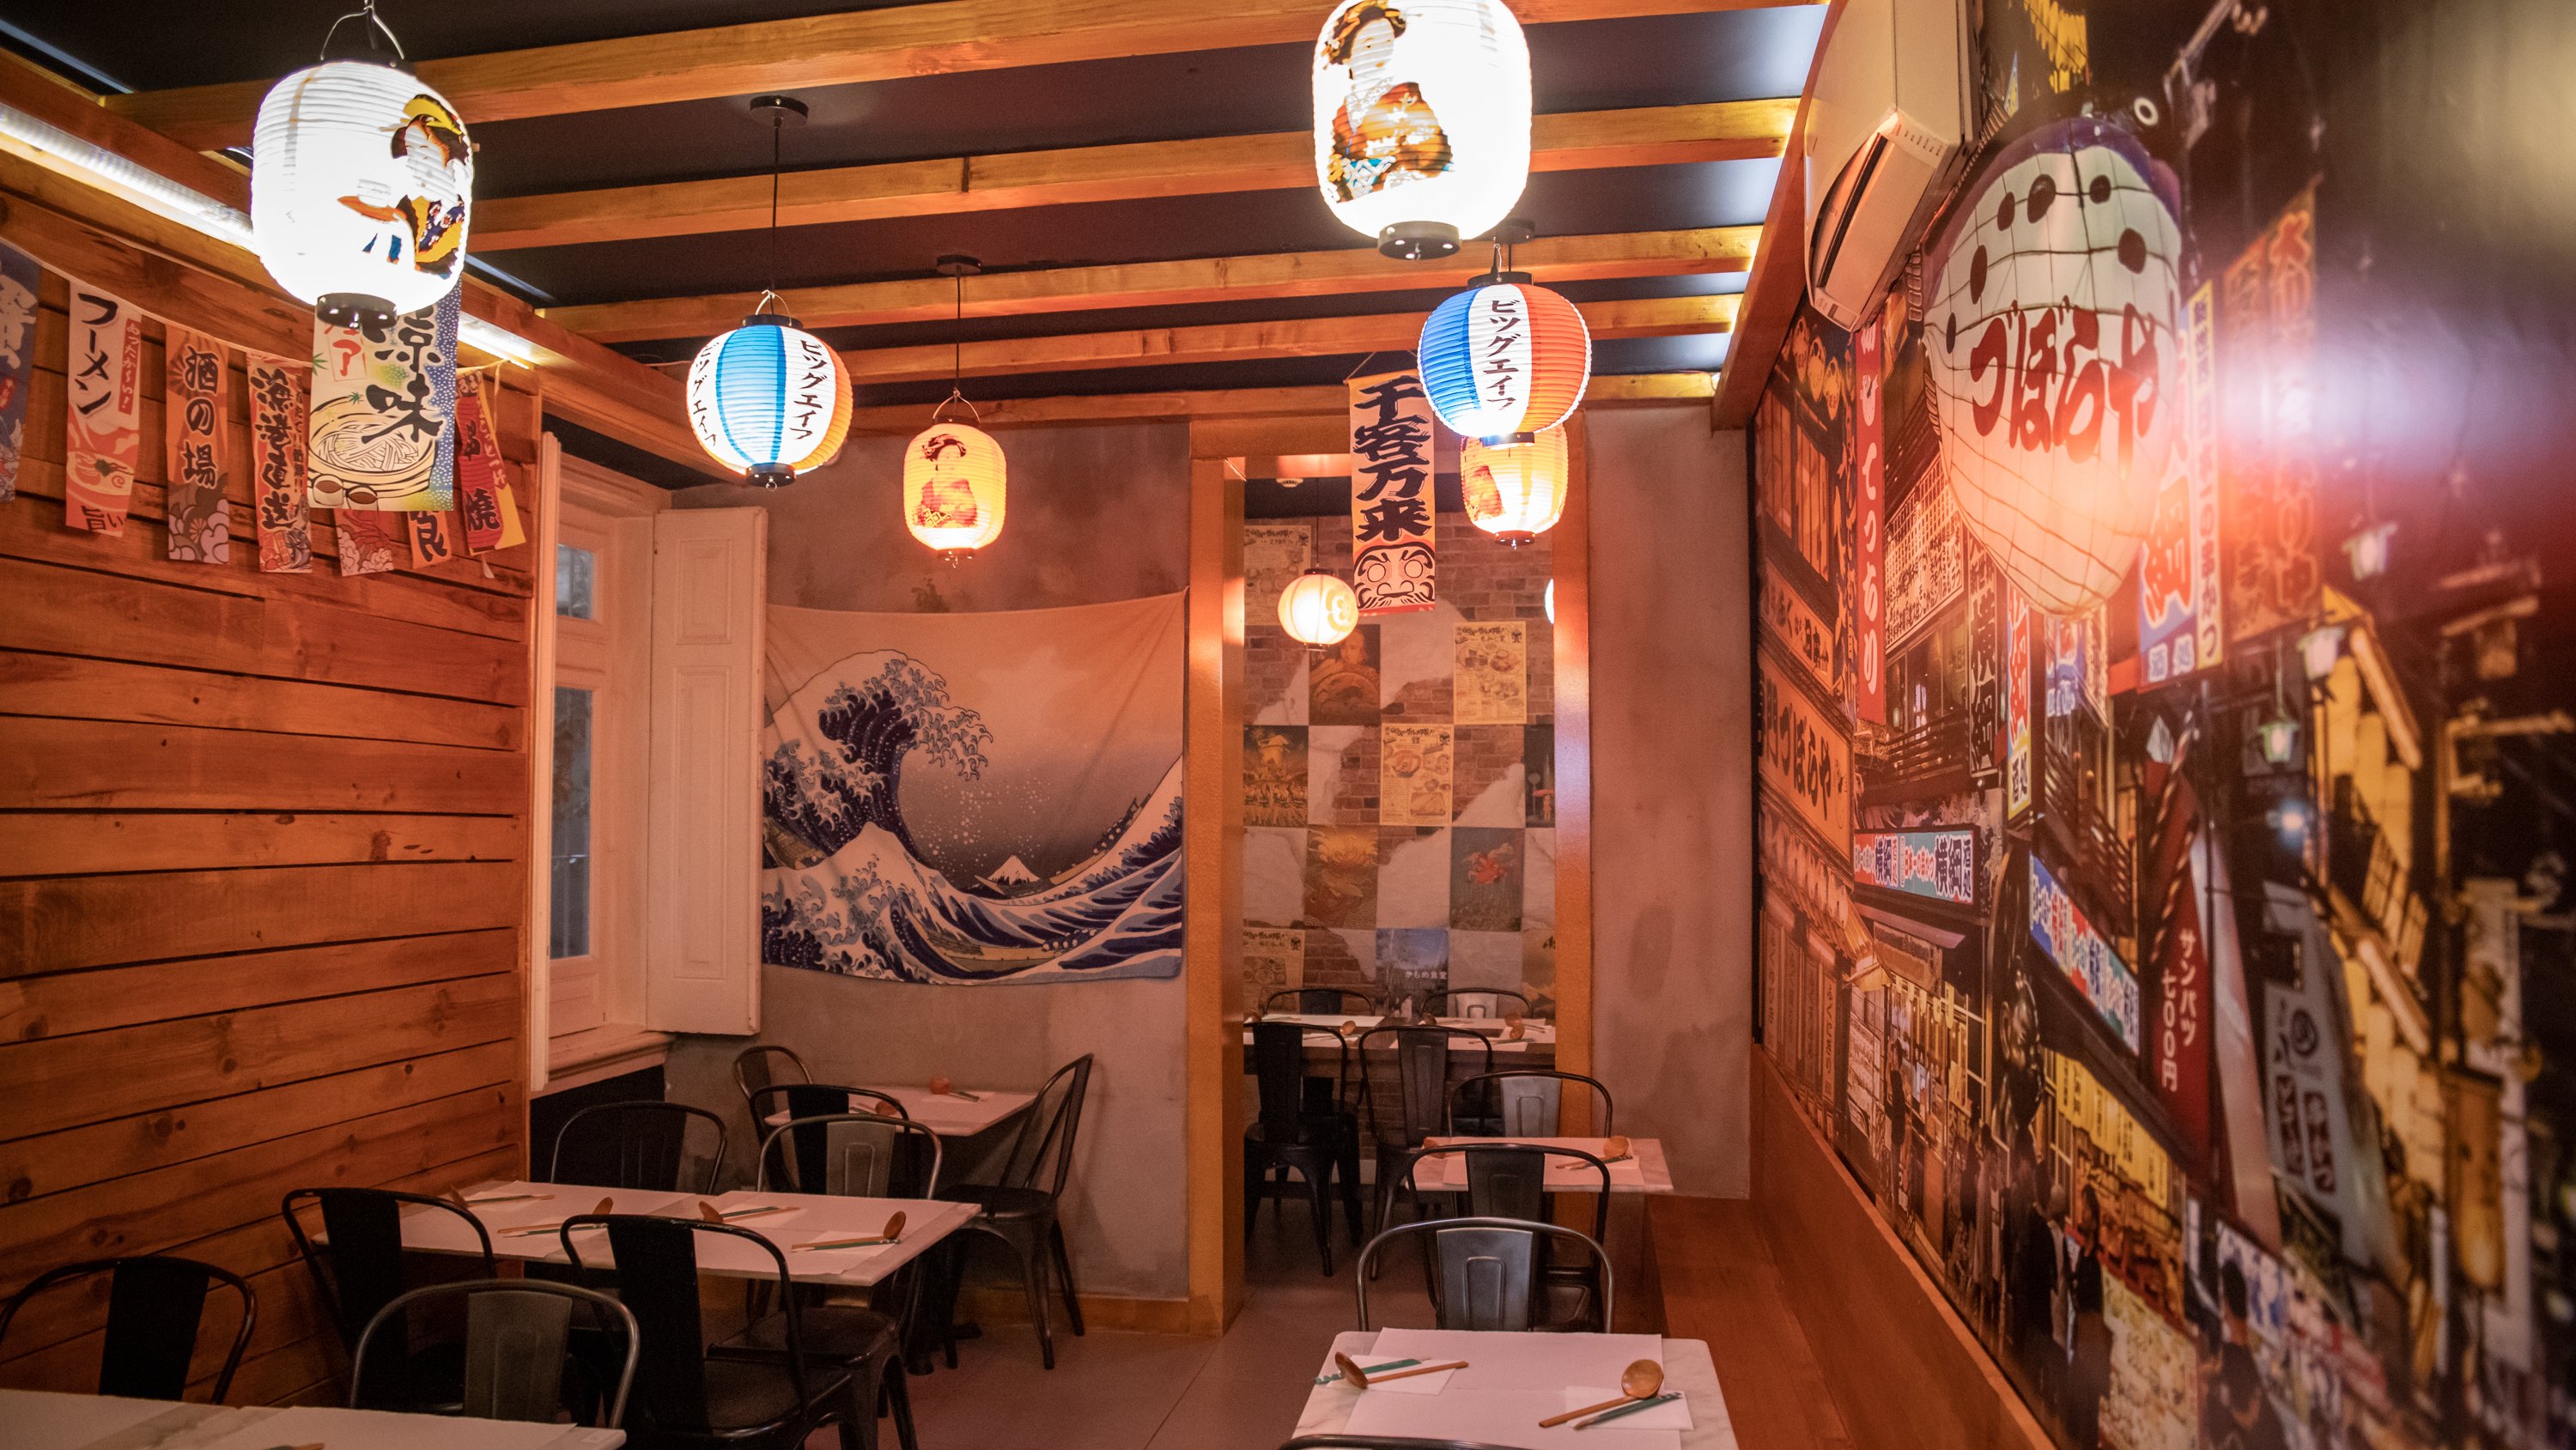 Novo restaurante Japonês - Kapitan Ramen Bistro - na Avenida da Liberdade em Lisboa. Com muitas referências visuais ao japão, desde cartazes, autocolantes, etc... a expecialidade da casa é o Raman. 5 de Abril de 2022 Avenida da Liberdade, Lisboa TOMÁS SILVA/OBSERVADOR